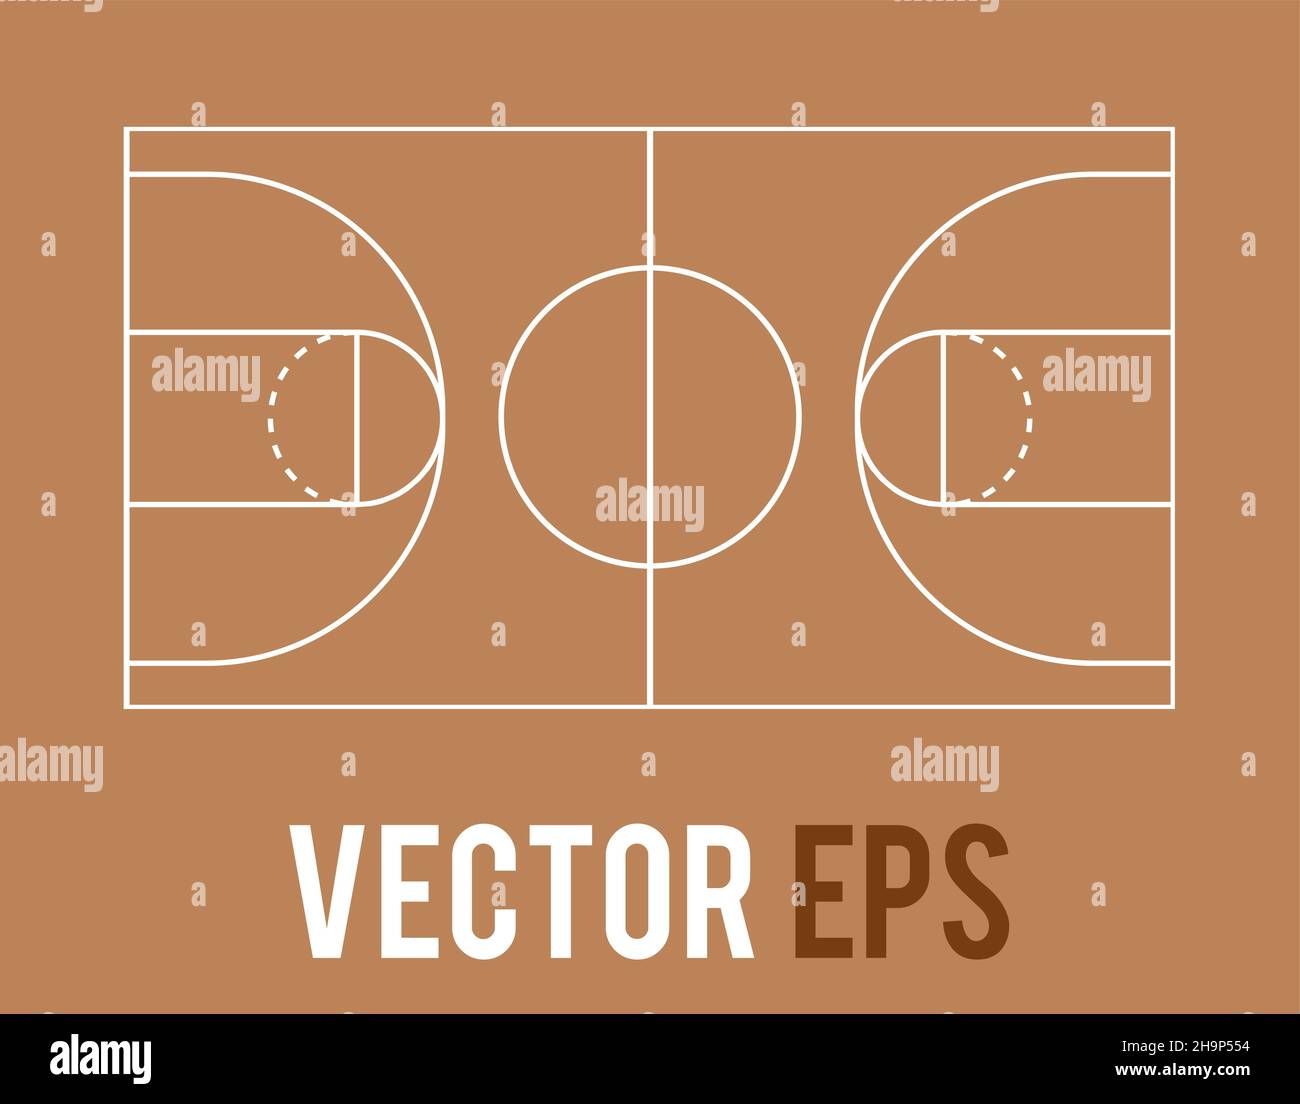 Plan de terrain de basket-ball vierge vectoriel isolé pour coach d'équipe depuis la vue de dessus Illustration de Vecteur